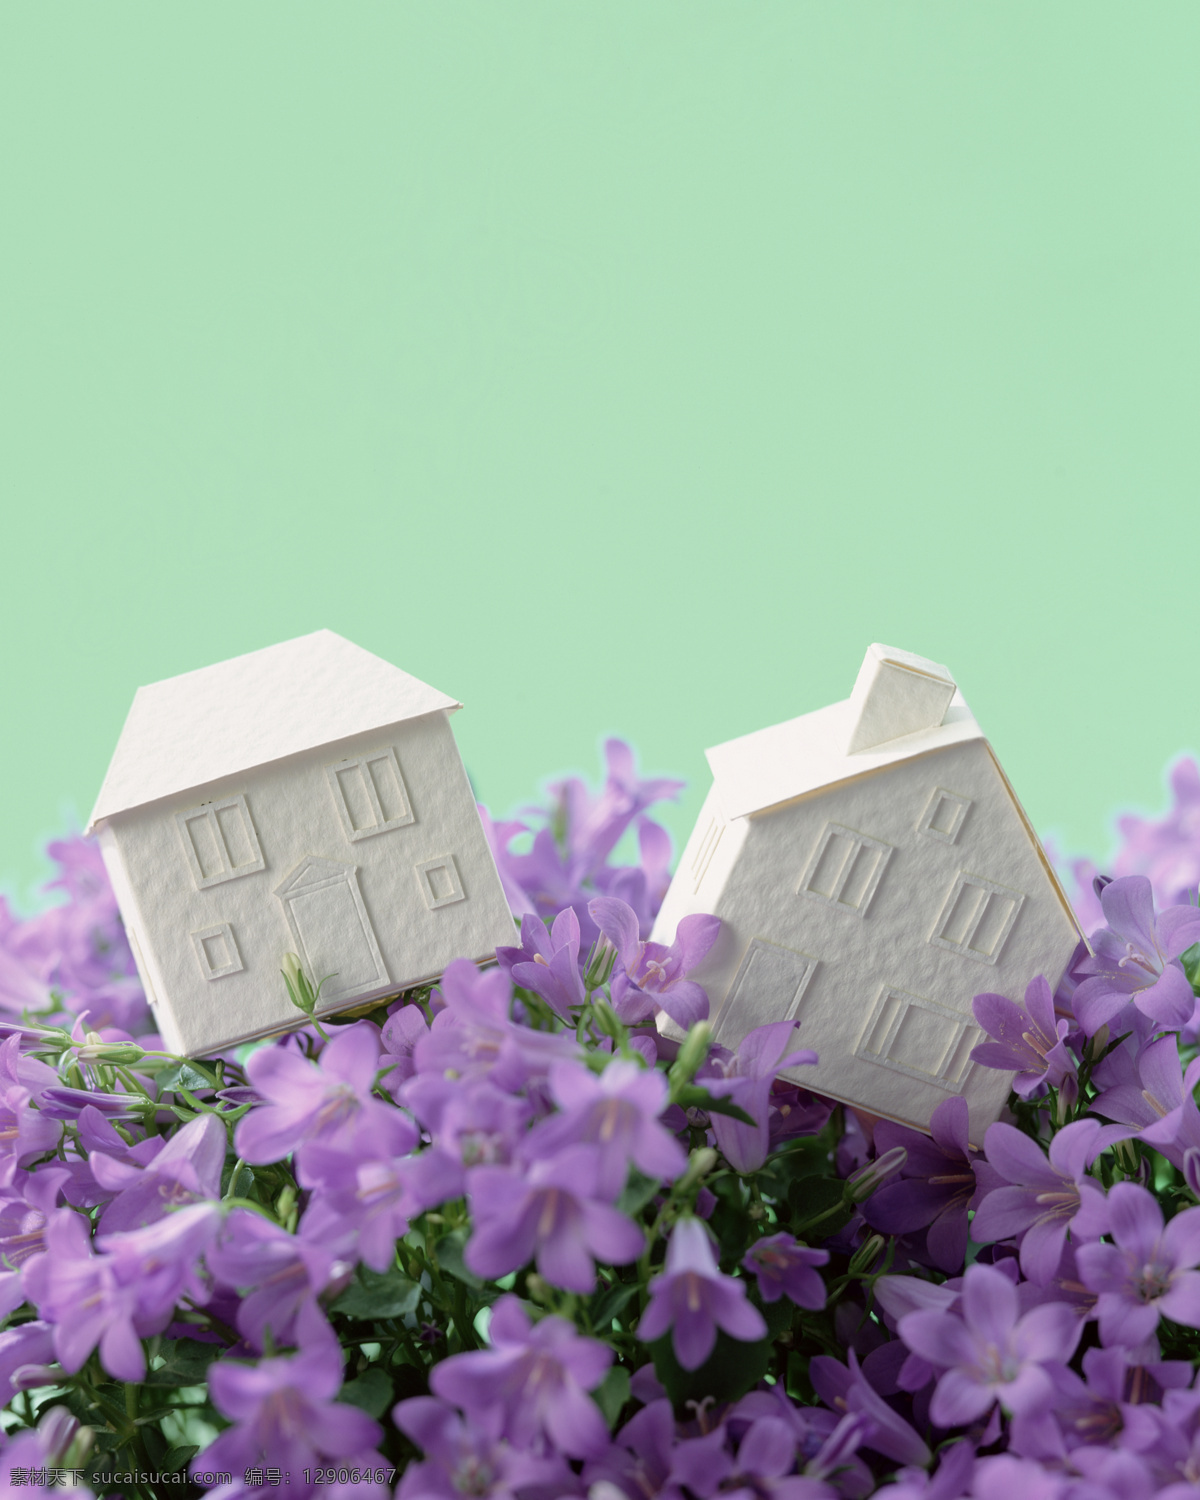 插花免费下载 高清 小房子 紫色的花 插花造型 风景 生活 旅游餐饮